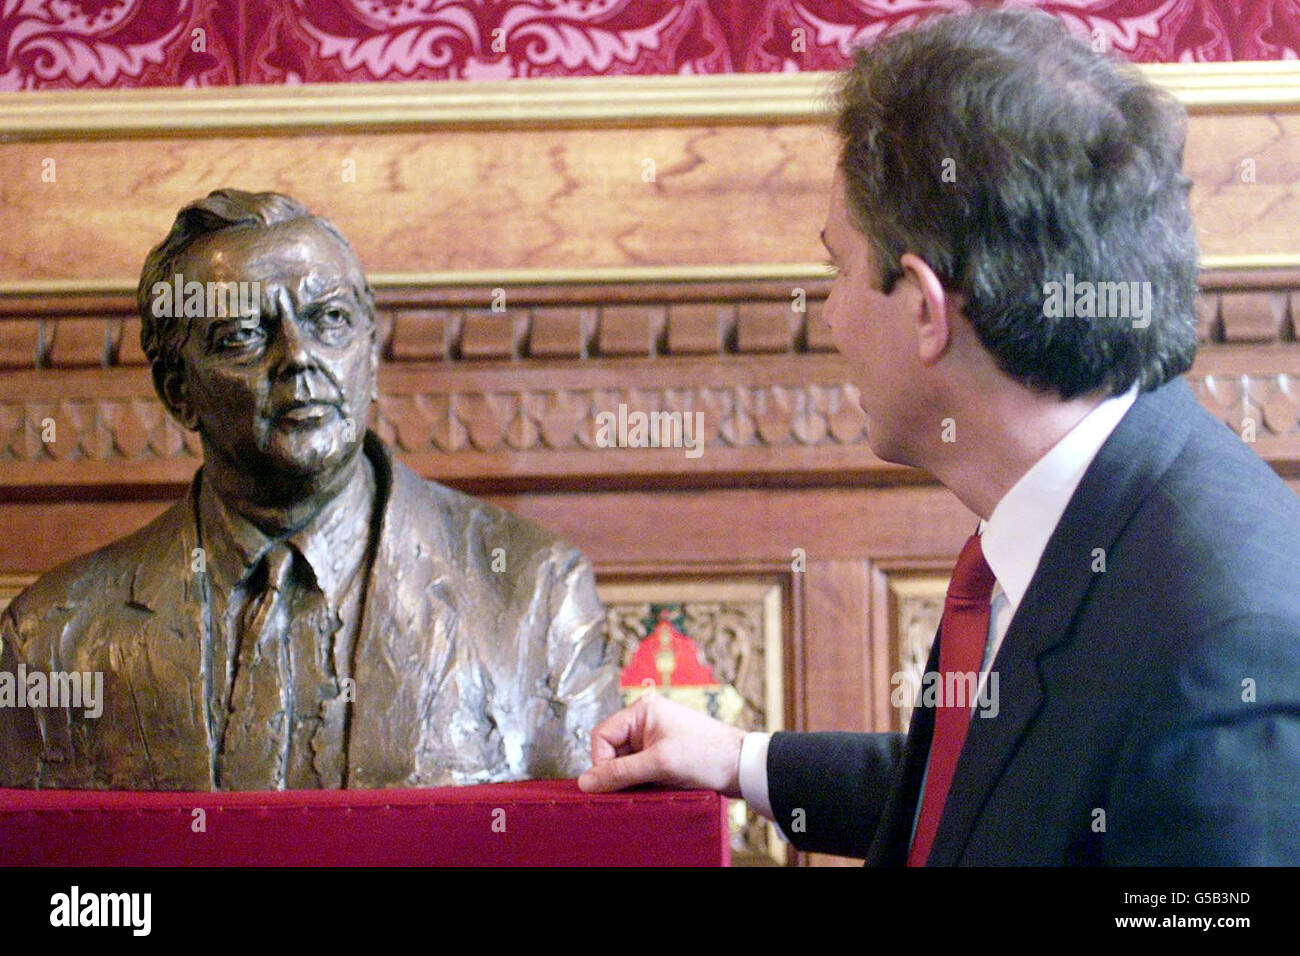 Der britische Premierminister Tony Blair enthüllt im Londoner Unterhaus eine Bronzebüste von Lord Wilson von Rievaulx, Labours dienstältestem Premierminister, bei einer Zeremonie, an der Lady Wilson und andere Mitglieder der Familie des verstorbenen Premierministers teilnahmen. * Harold Wilson, der mit 31 Jahren der jüngste Minister des Kabinetts seit Pitt wurde, starb 1995 im Alter von 79 Jahren. Die Skulptur wird schließlich ihren Platz neben Gleichnissen anderer Premierminister des 20. Jahrhunderts in der Mitgliederlobby der Commons einnehmen. Stockfoto